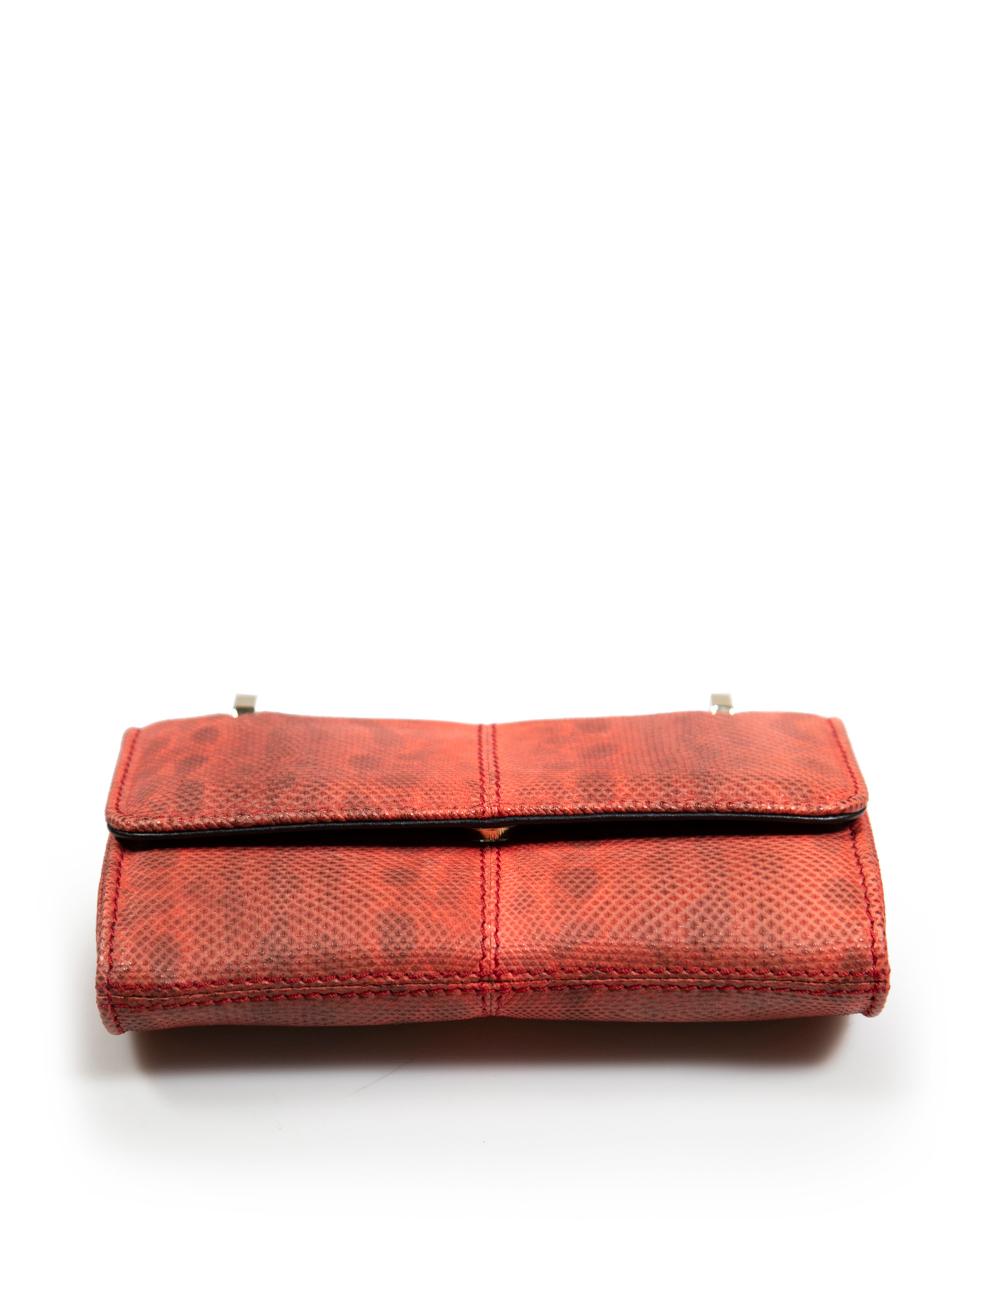 Women's M2Malletier Red Leather La Fleur Du Mal Top Handle Bag For Sale